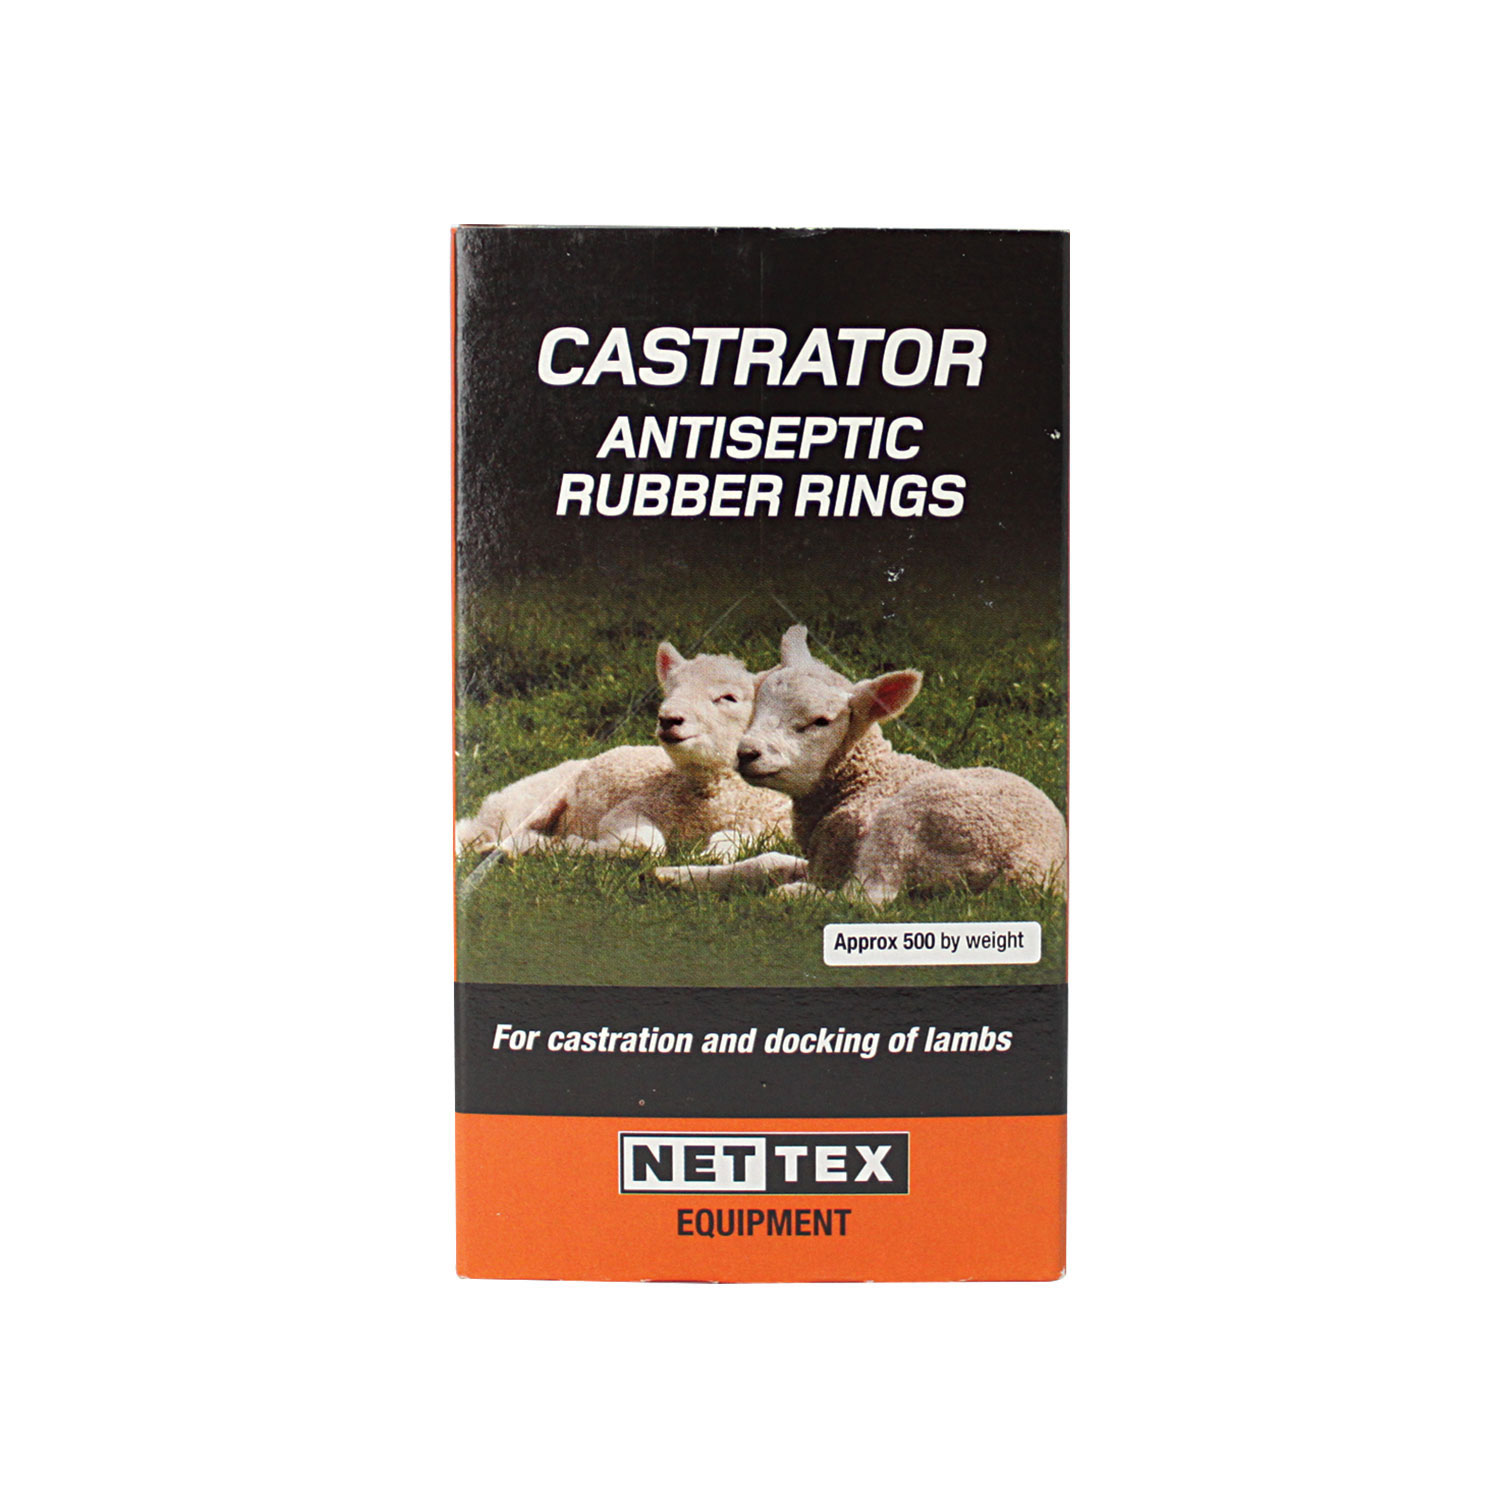 NETTEX CASTRATOR ANTISEPTIC RUBBER RINGS 1500 PACK